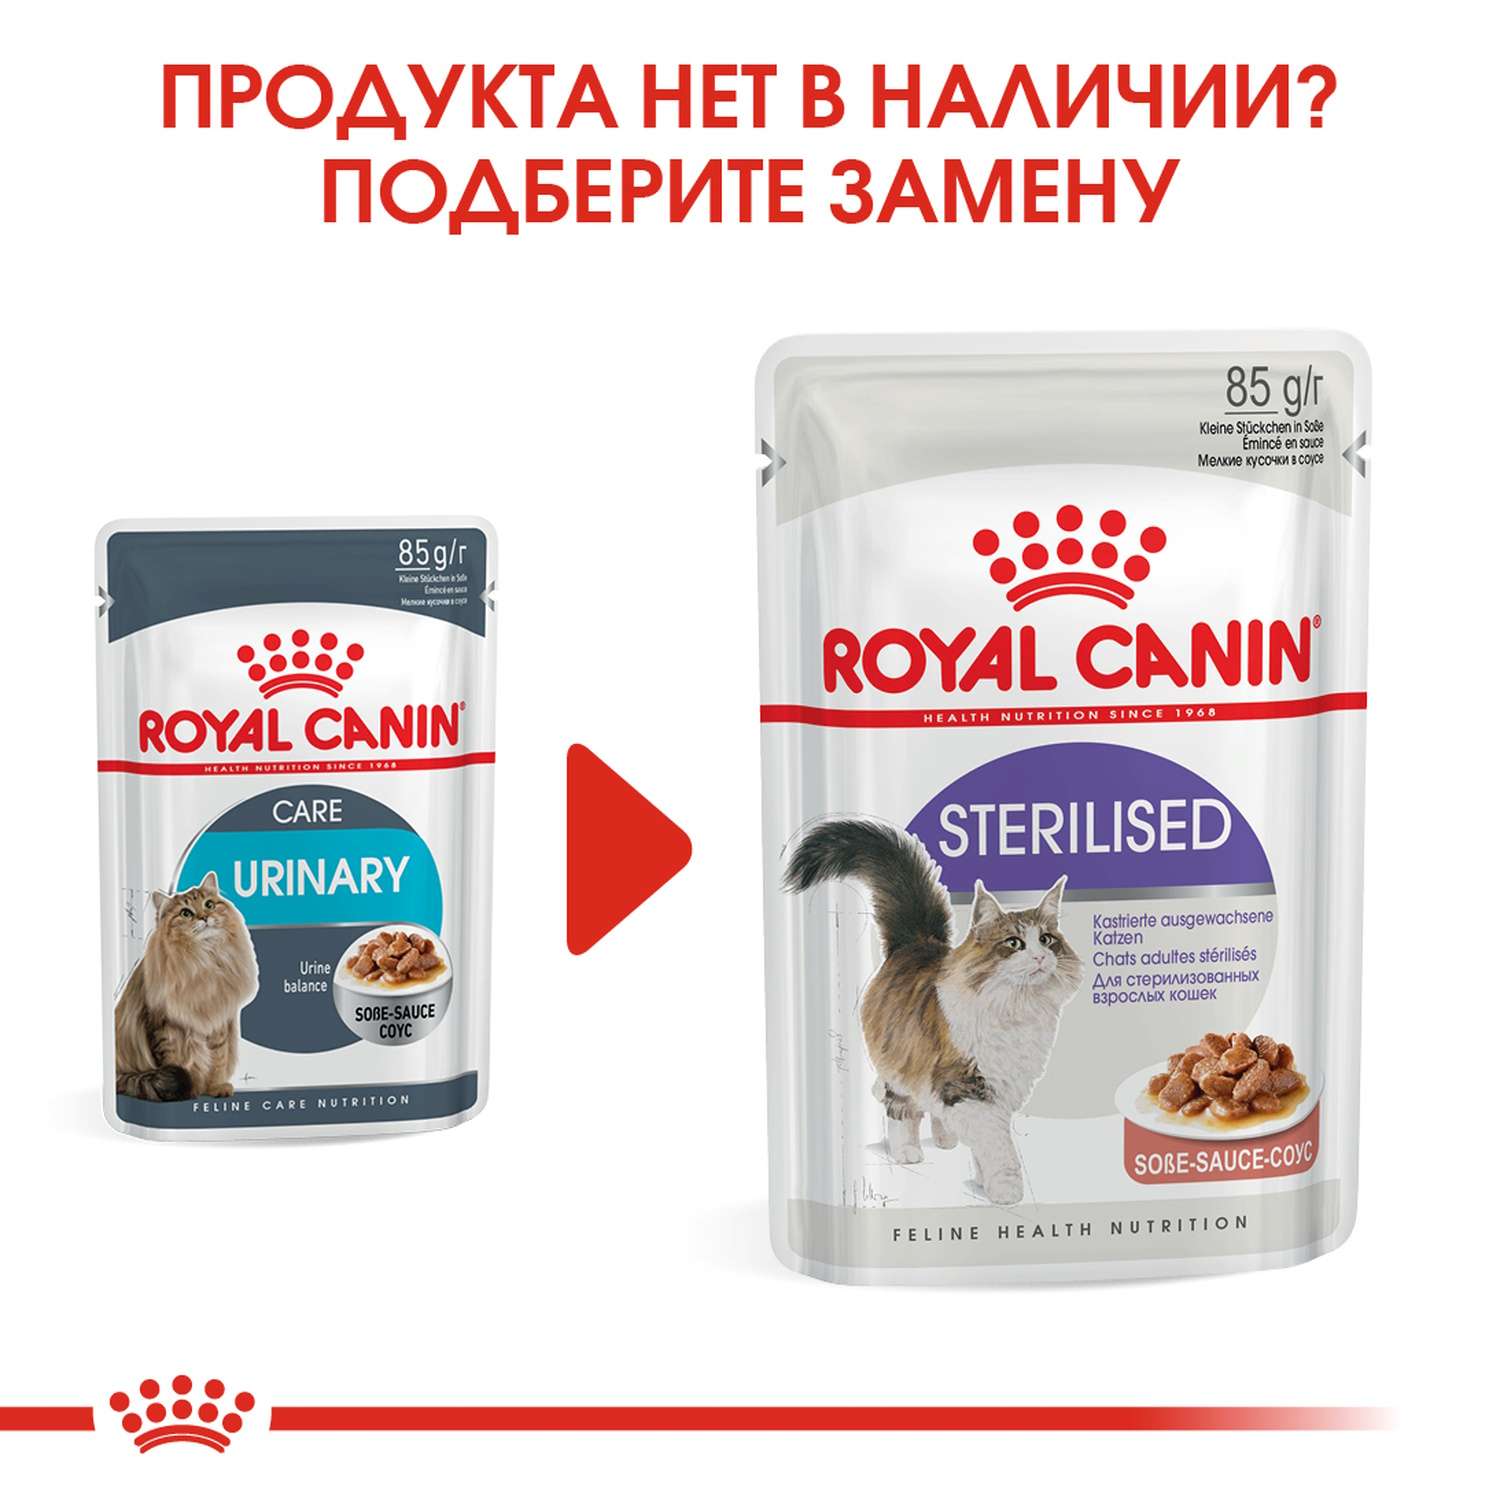 Корм влажный для кошек ROYAL CANIN Urinary Care 85г соус в целях профилактики мочекаменной болезни пауч - фото 9